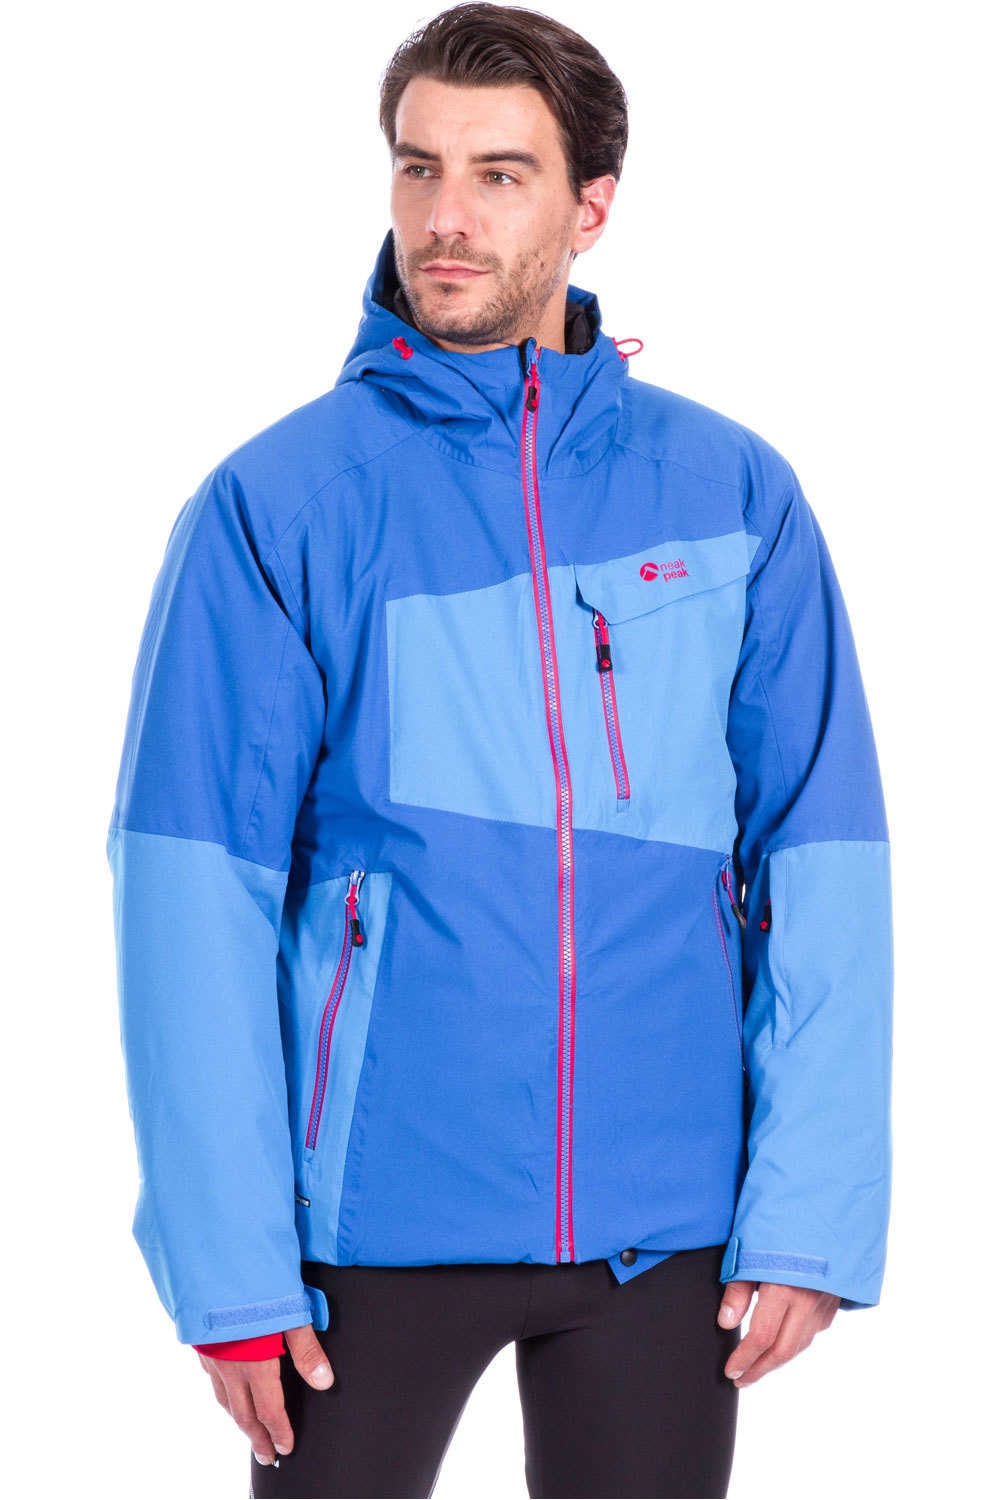 Neak Peak chaqueta esquí hombre XANDERAN SF vista frontal